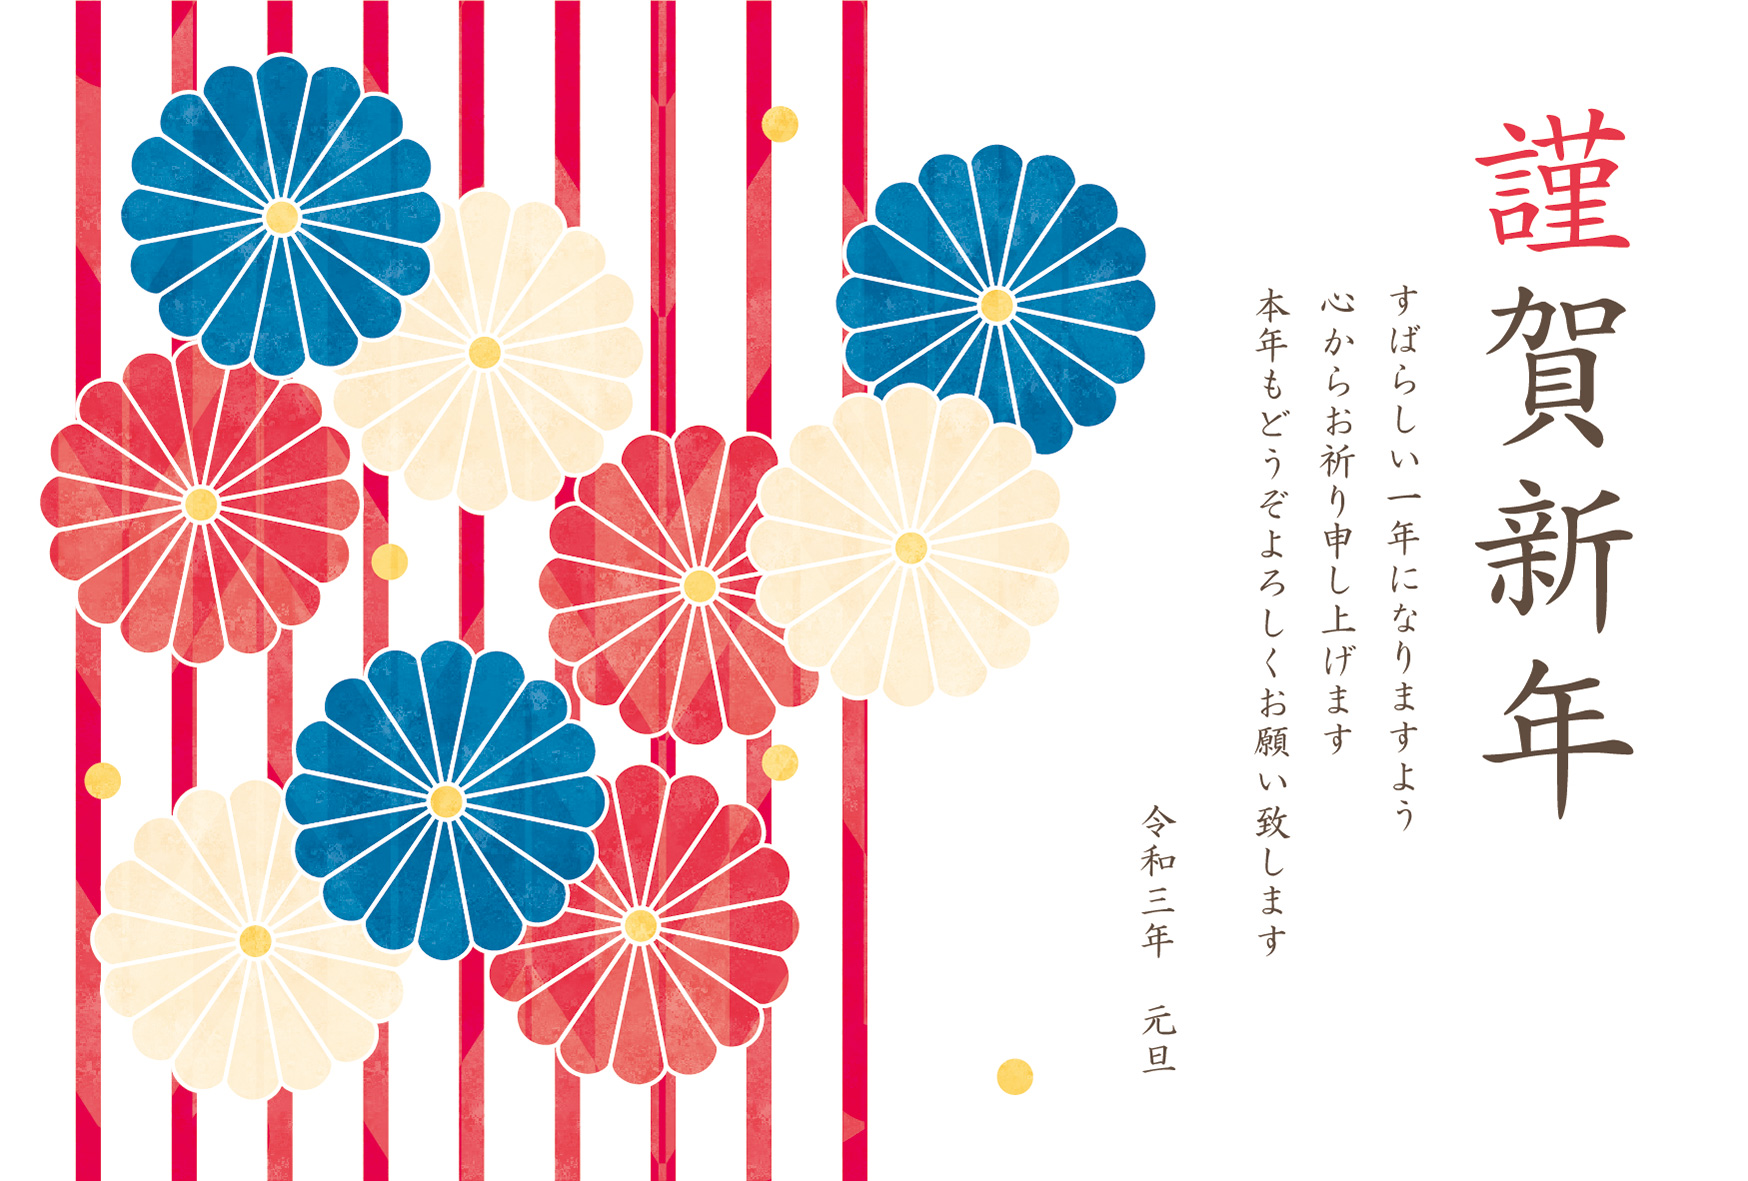 年賀状 丑年 三色の菊の花とストライプ柄のデザイン 年賀状21無料イラスト素材集